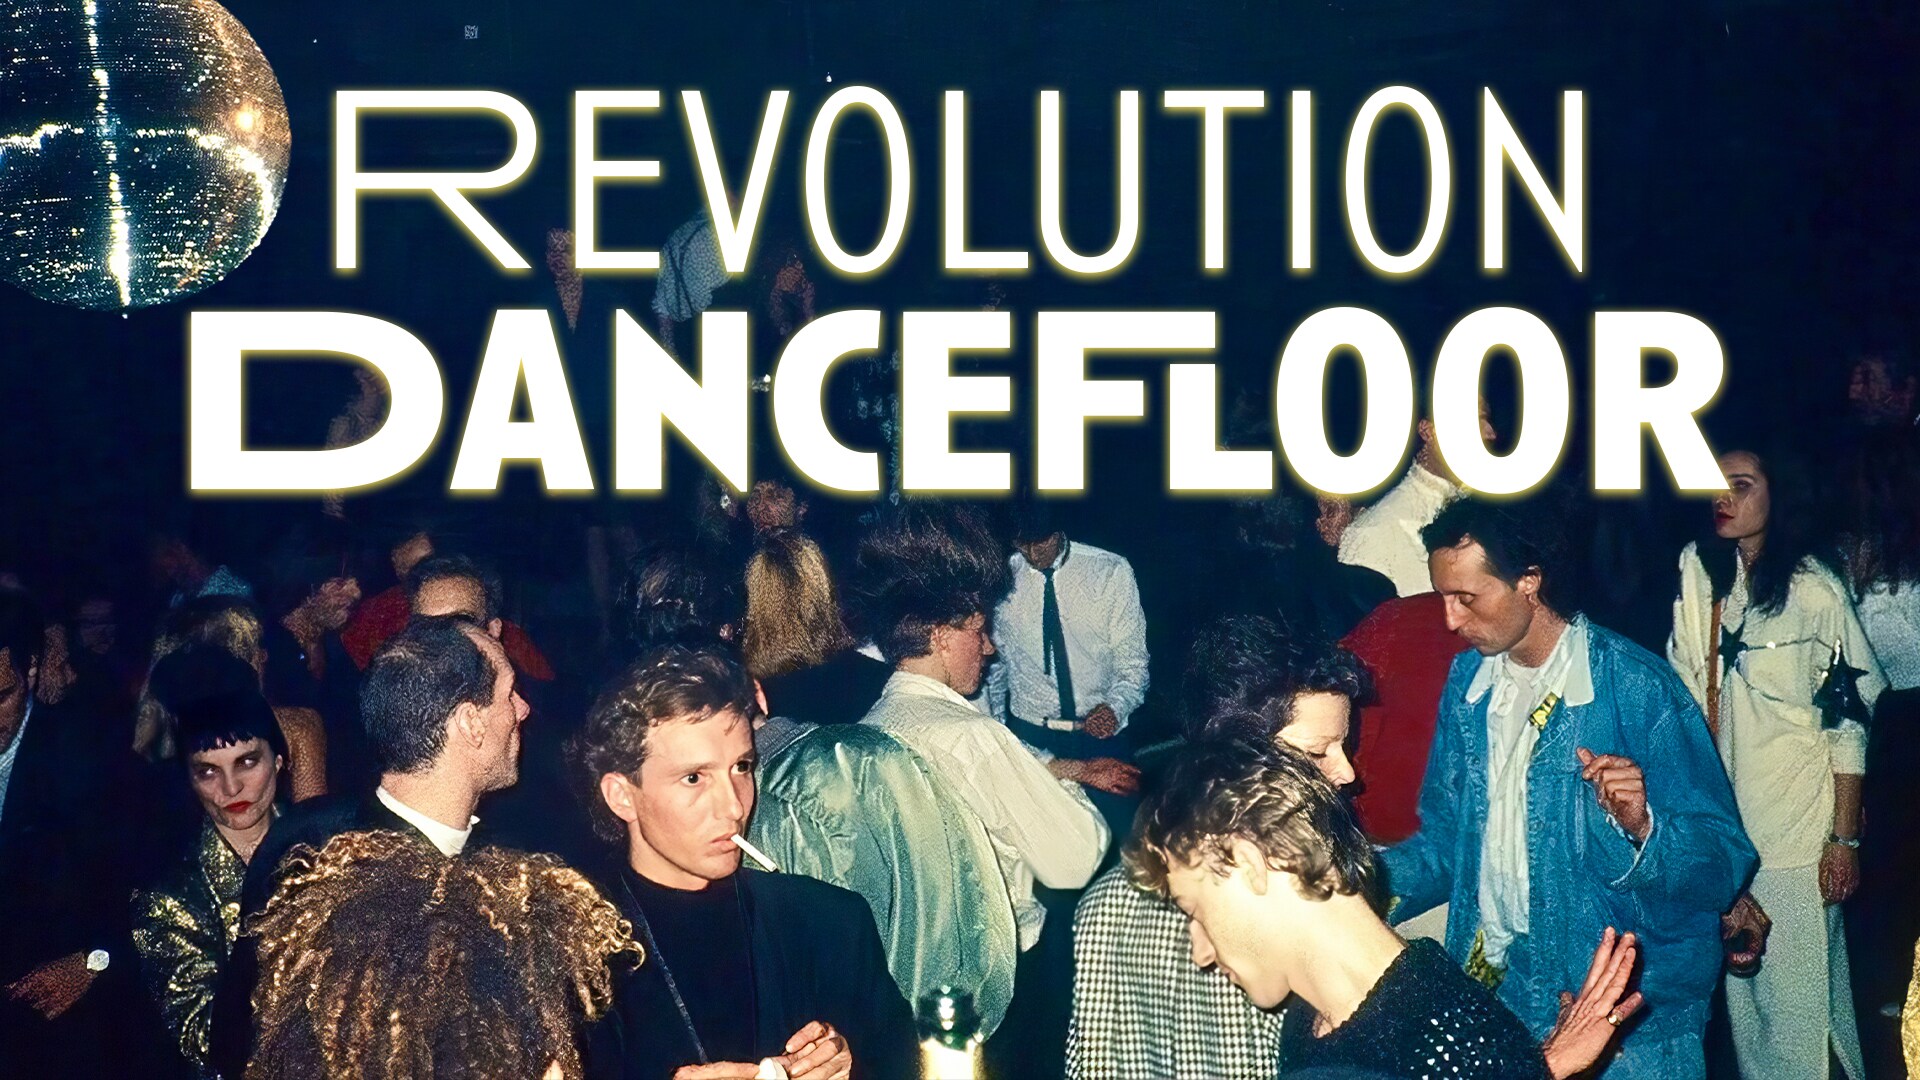 Revolution Dancefloor